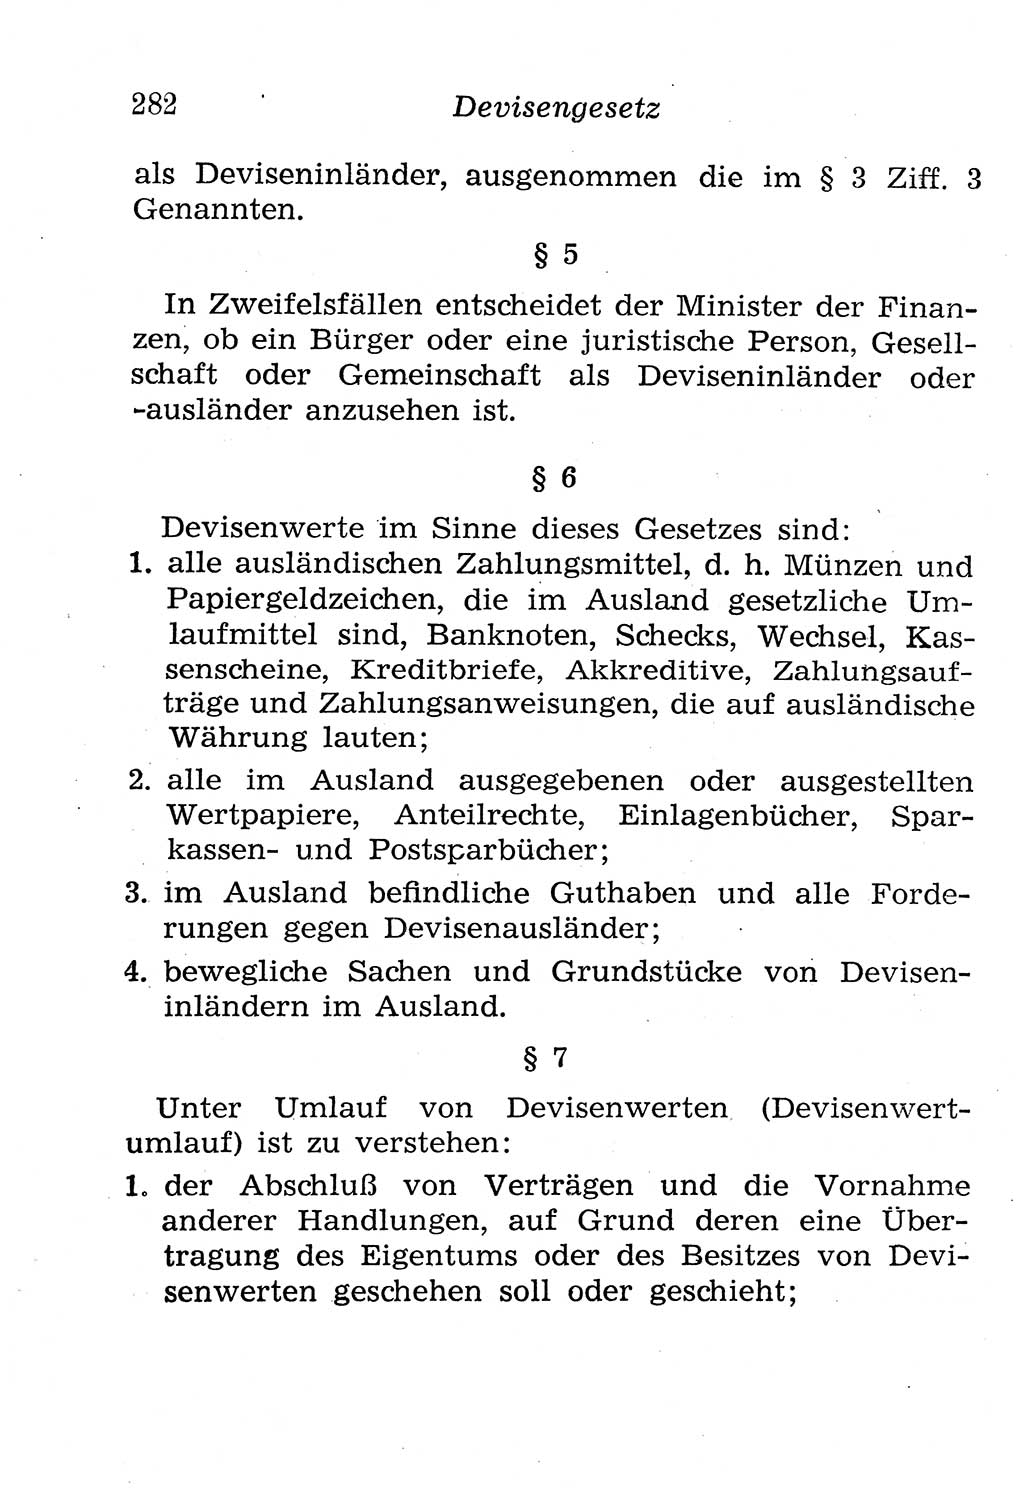 Strafgesetzbuch (StGB) und andere Strafgesetze [Deutsche Demokratische Republik (DDR)] 1958, Seite 282 (StGB Strafges. DDR 1958, S. 282)